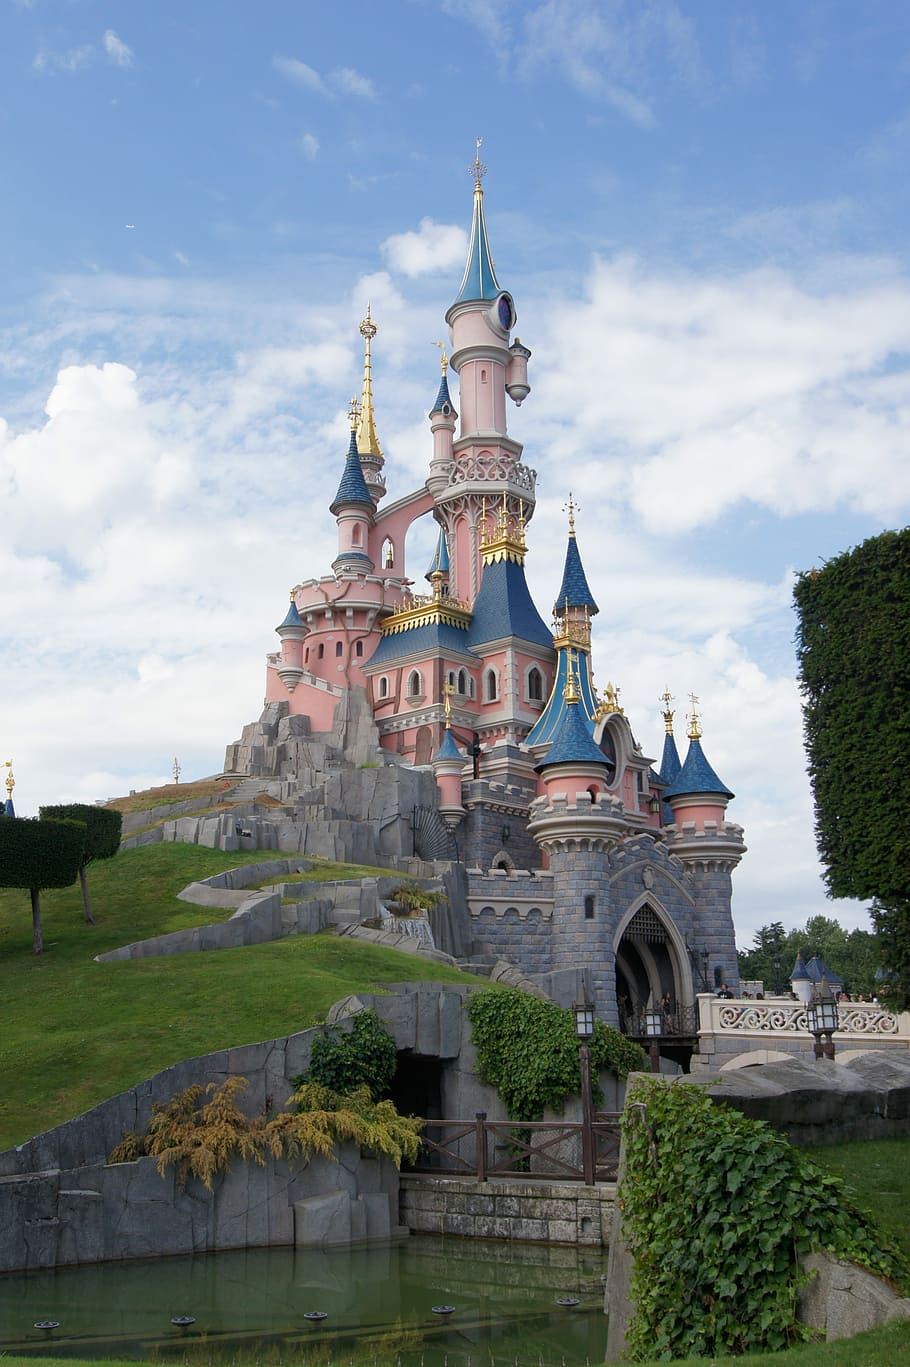 Disney Castle, castle, princess, disneyland, paris, sky, belle au bois dormant, fairy, attraction, france